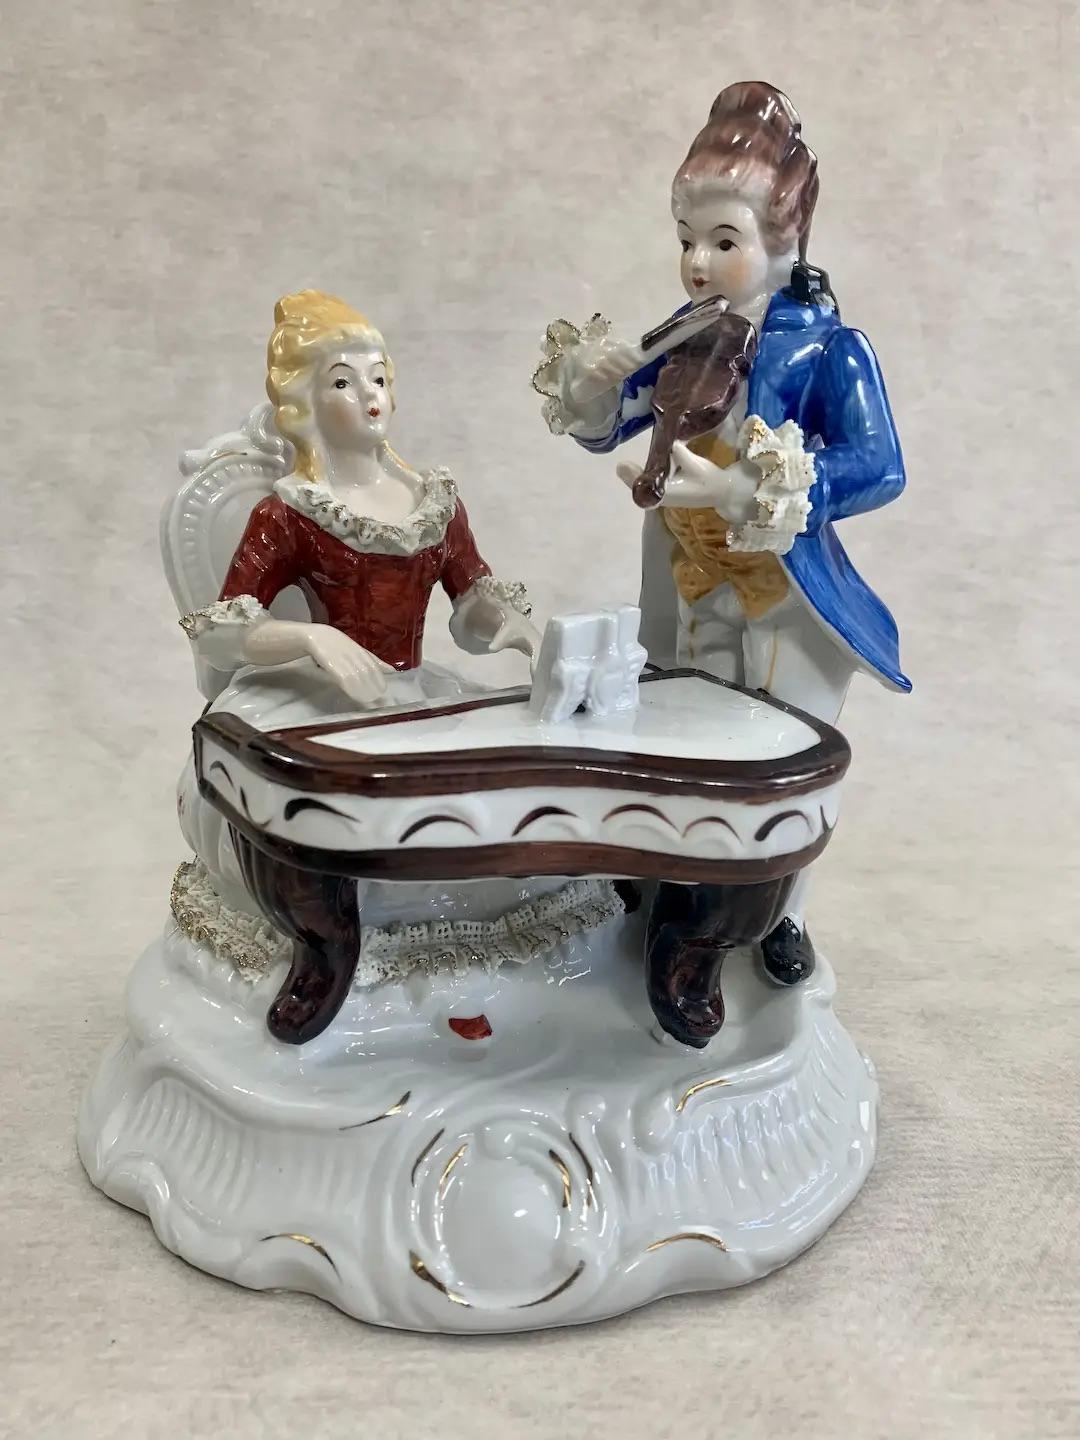 Vintage-Porzellanfigur im Stil der begehrten Romantik des viktorianischen Zeitalters, die eine Szene mit zwei klassischen Musikern, einem Pianisten und einem Geiger, beim Duett darstellt. Jede Figur ist wunderschön gekleidet in traditioneller